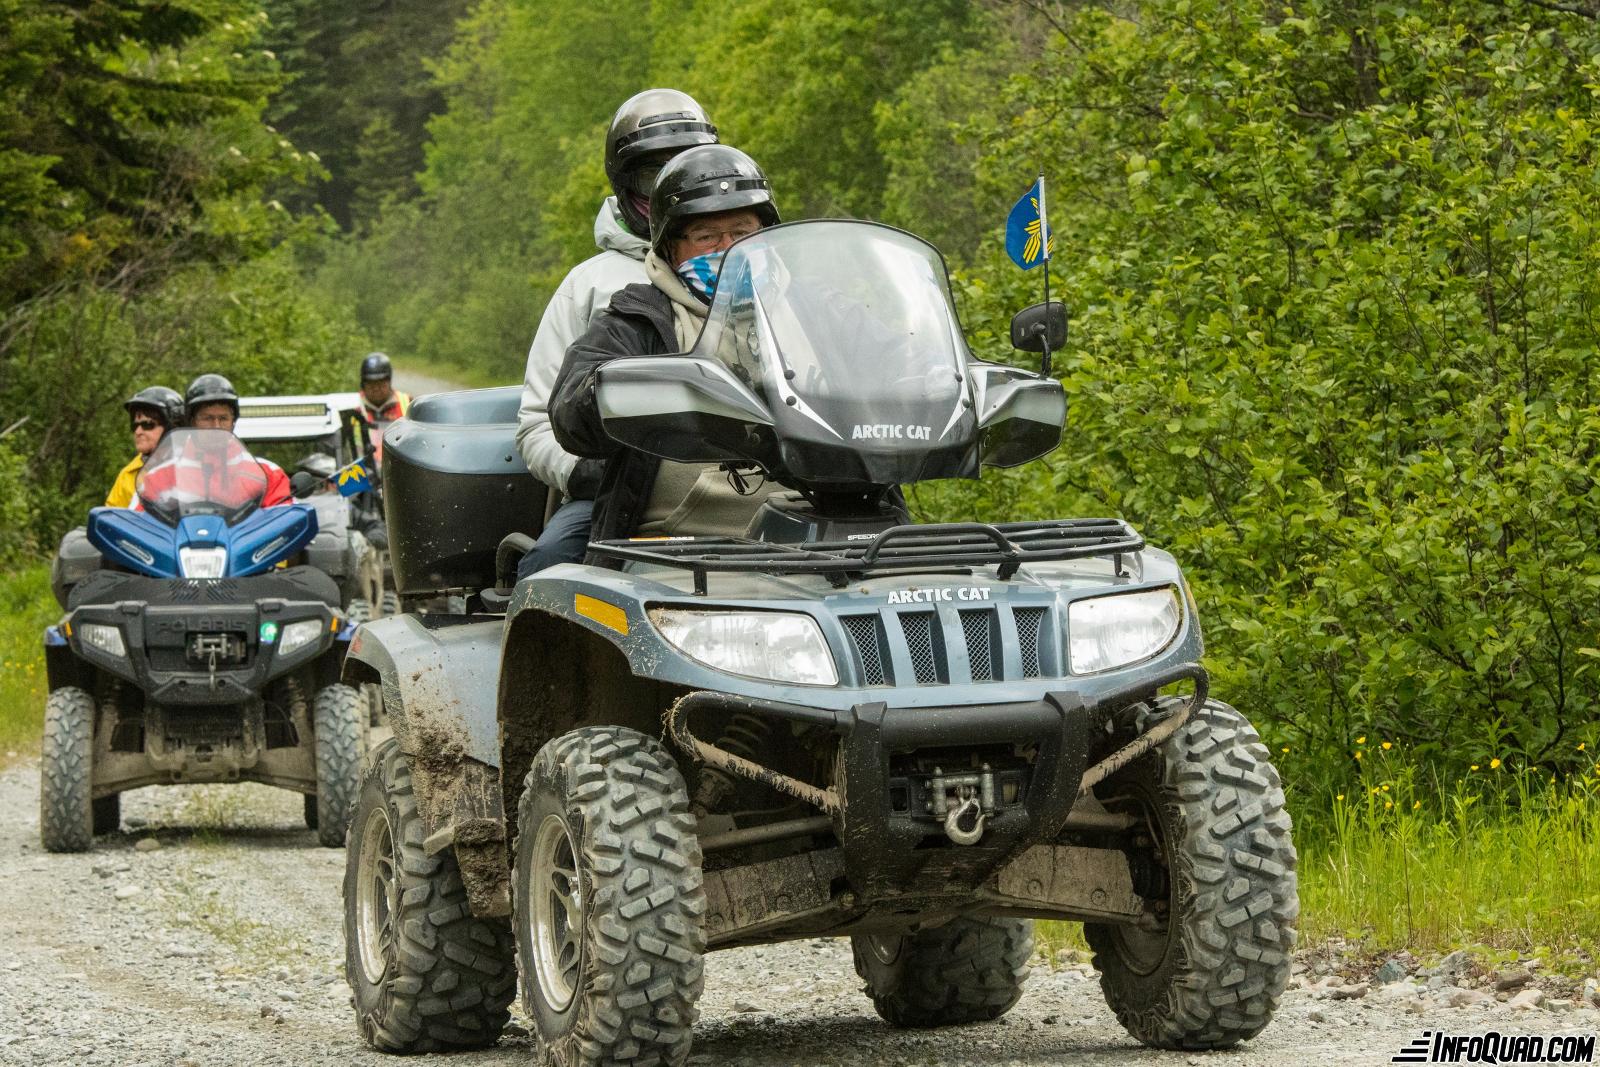 Ouverture des sentiers de quad au Québec